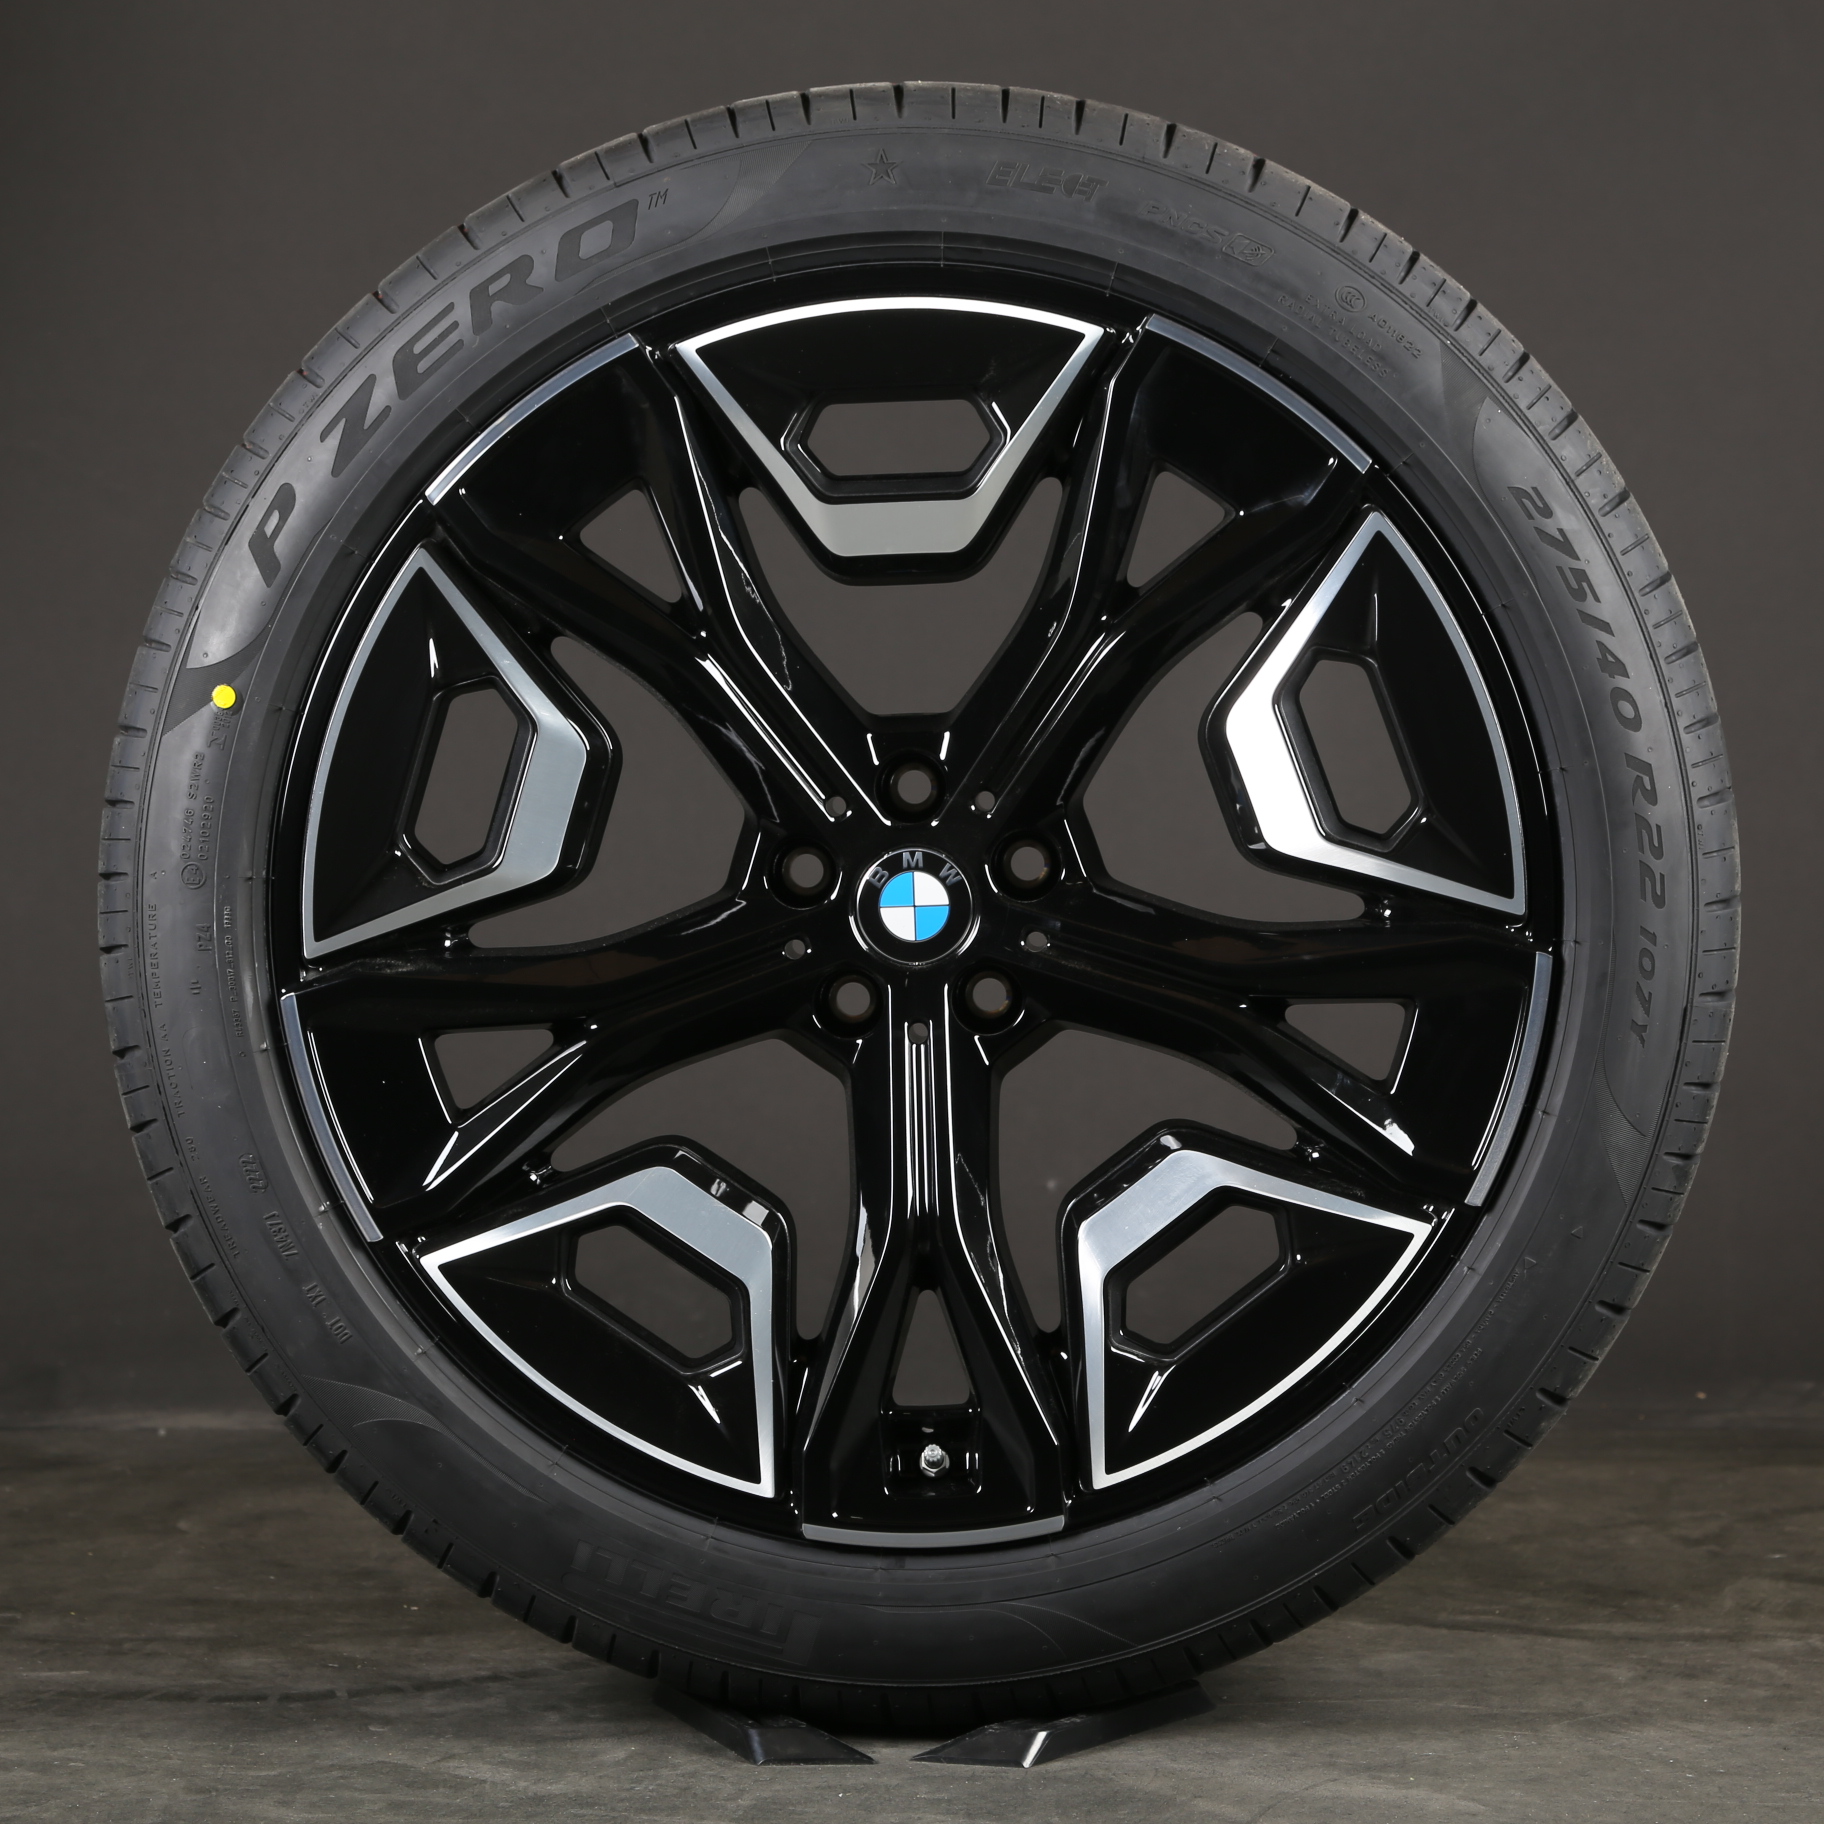 Originale 22-tommer BMW iX sommerhjul i20 Styling 1020 36115A02658 Sommerdæk